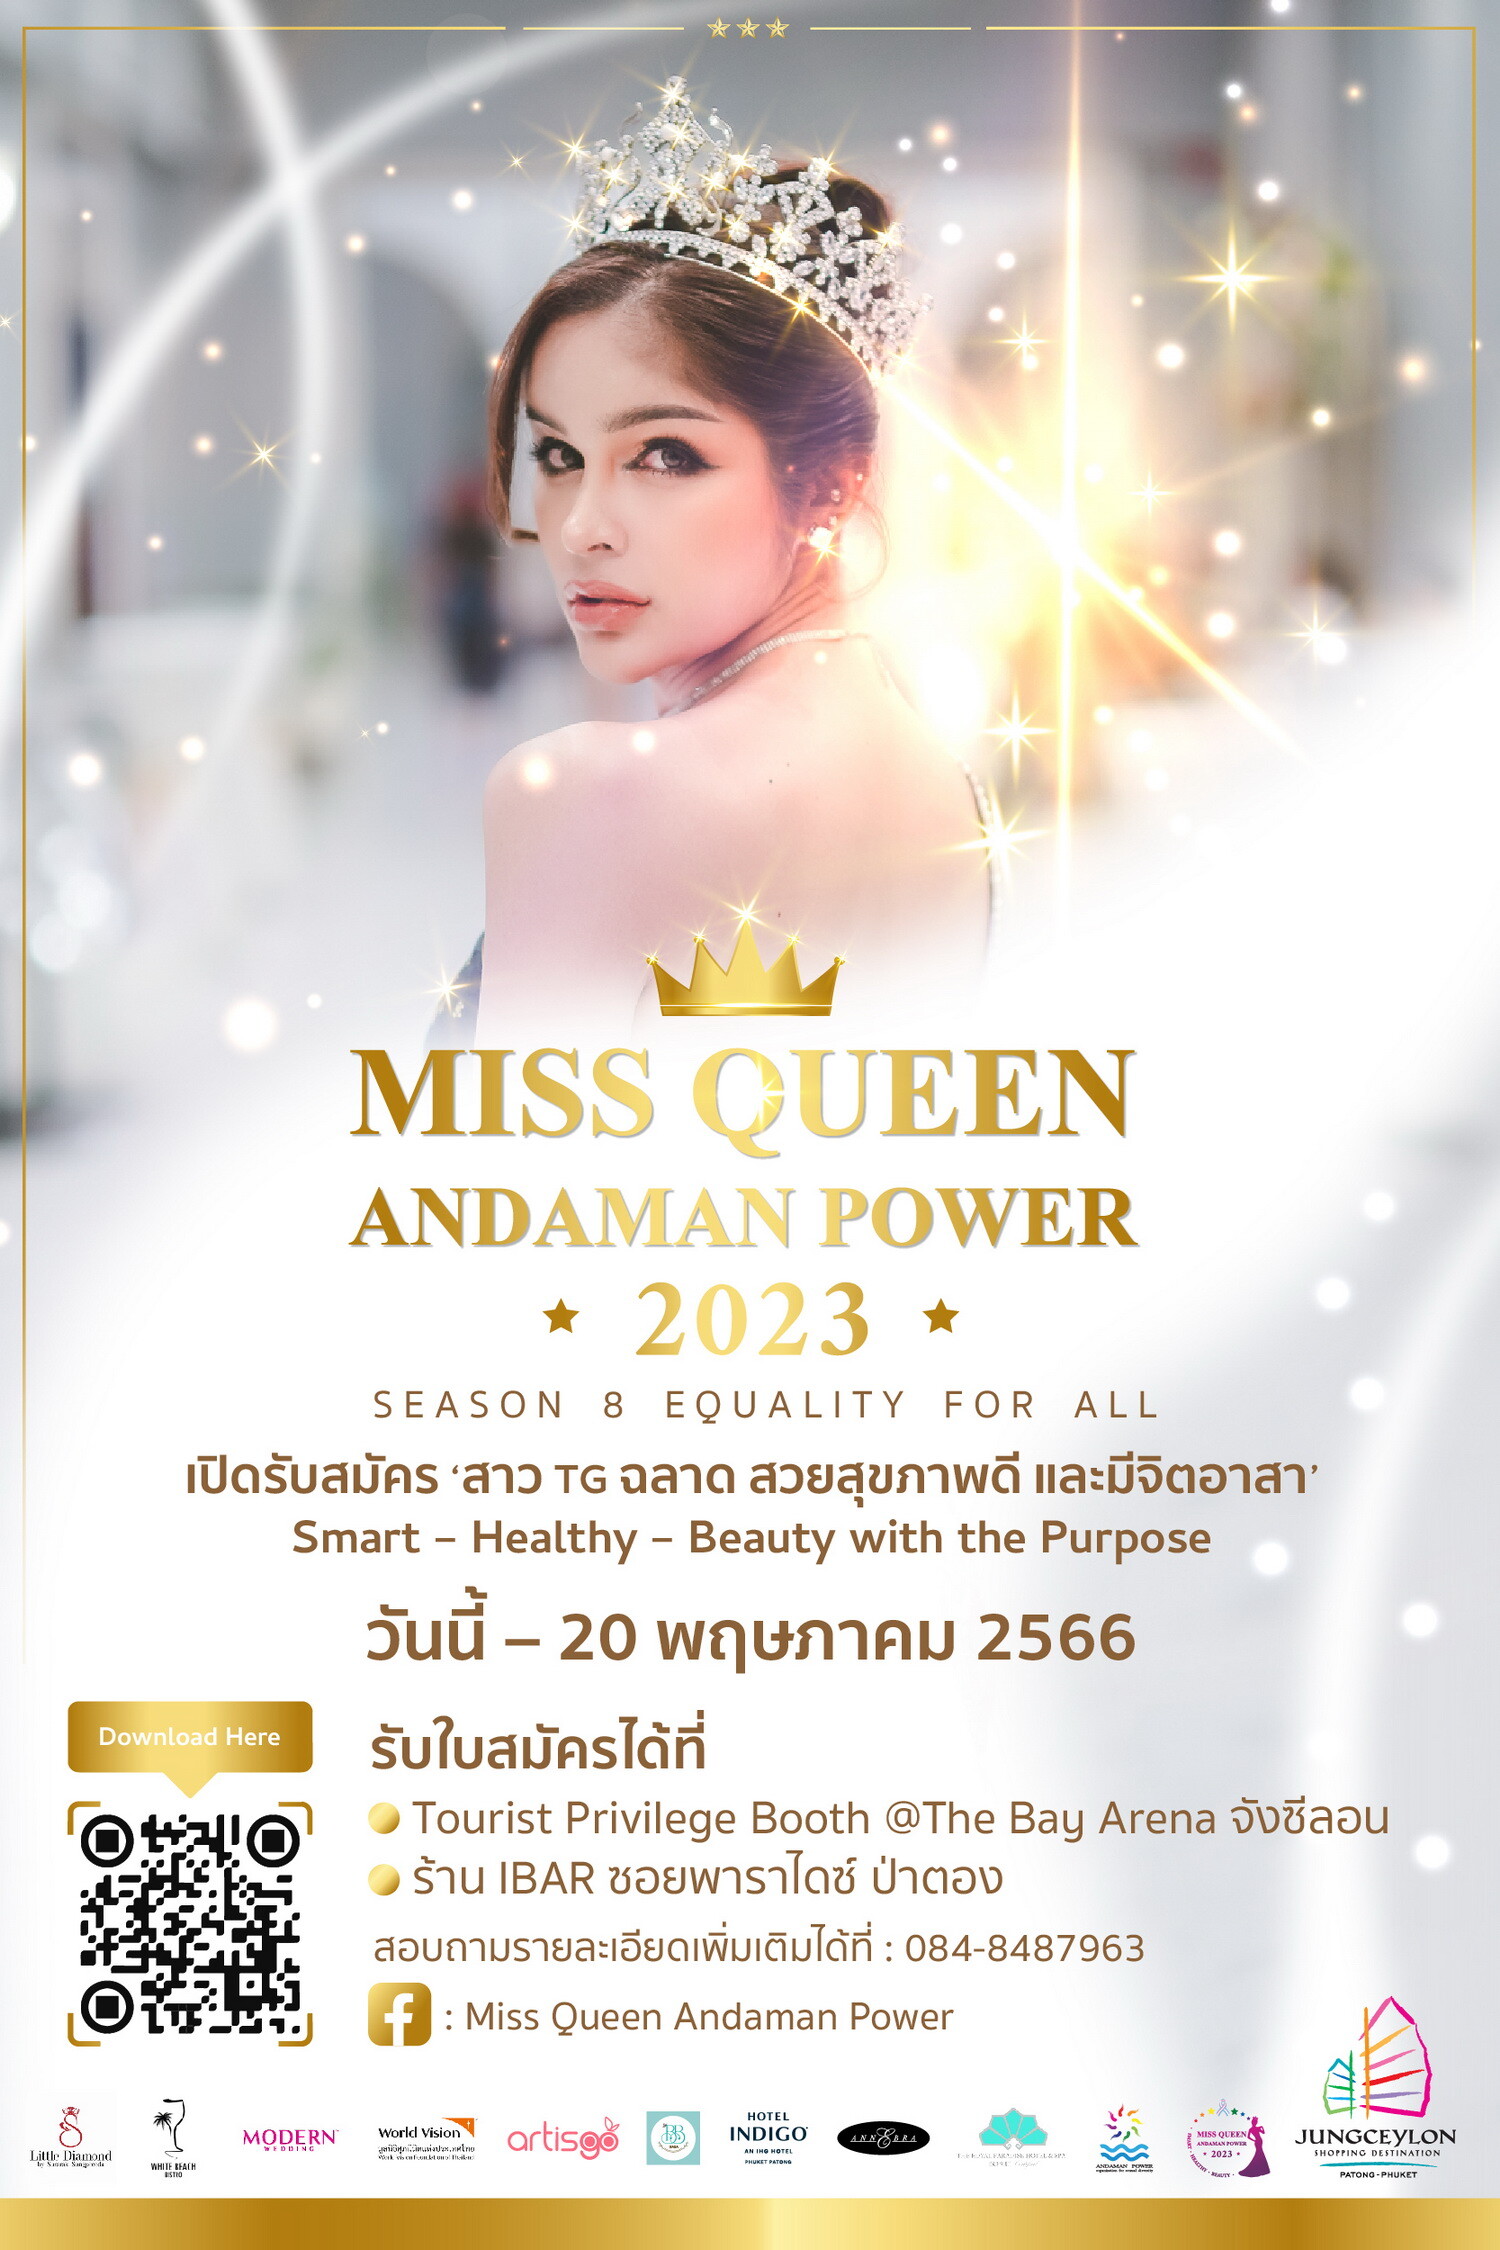 เปิดรับสมัครสาว TG เข้าร่วมการประกวด "Miss Queen Andaman Power 2023" สุดยอดการประกวดสาวประเภทสองครั้งยิ่งใหญ่ในจังหวัดภูเก็ต